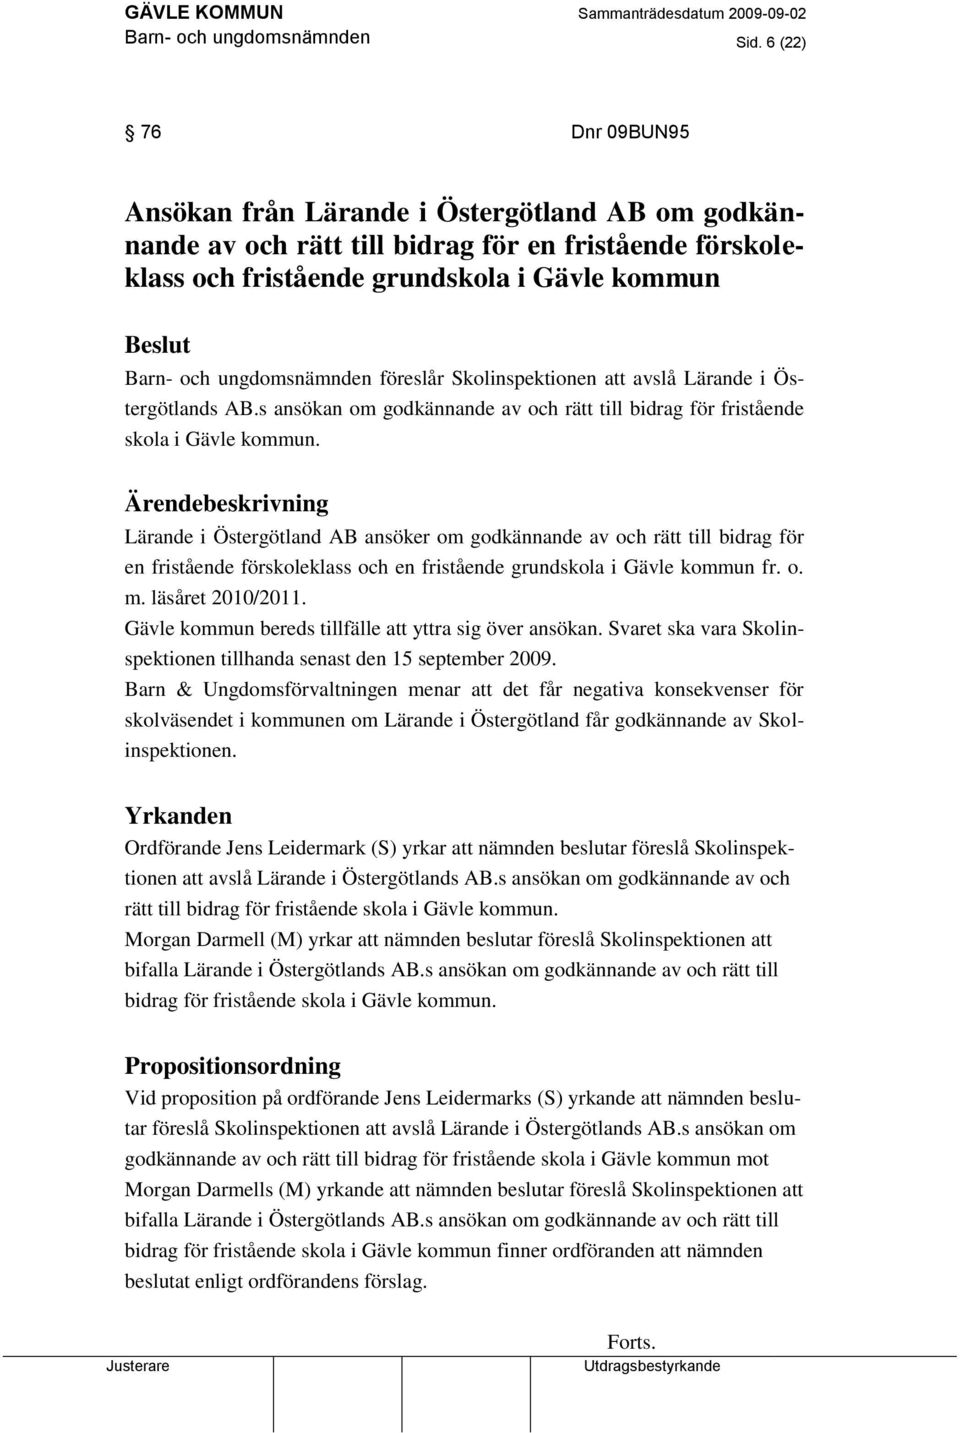 ungdomsnämnden föreslår Skolinspektionen att avslå Lärande i Östergötlands AB.s ansökan om godkännande av och rätt till bidrag för fristående skola i Gävle kommun.